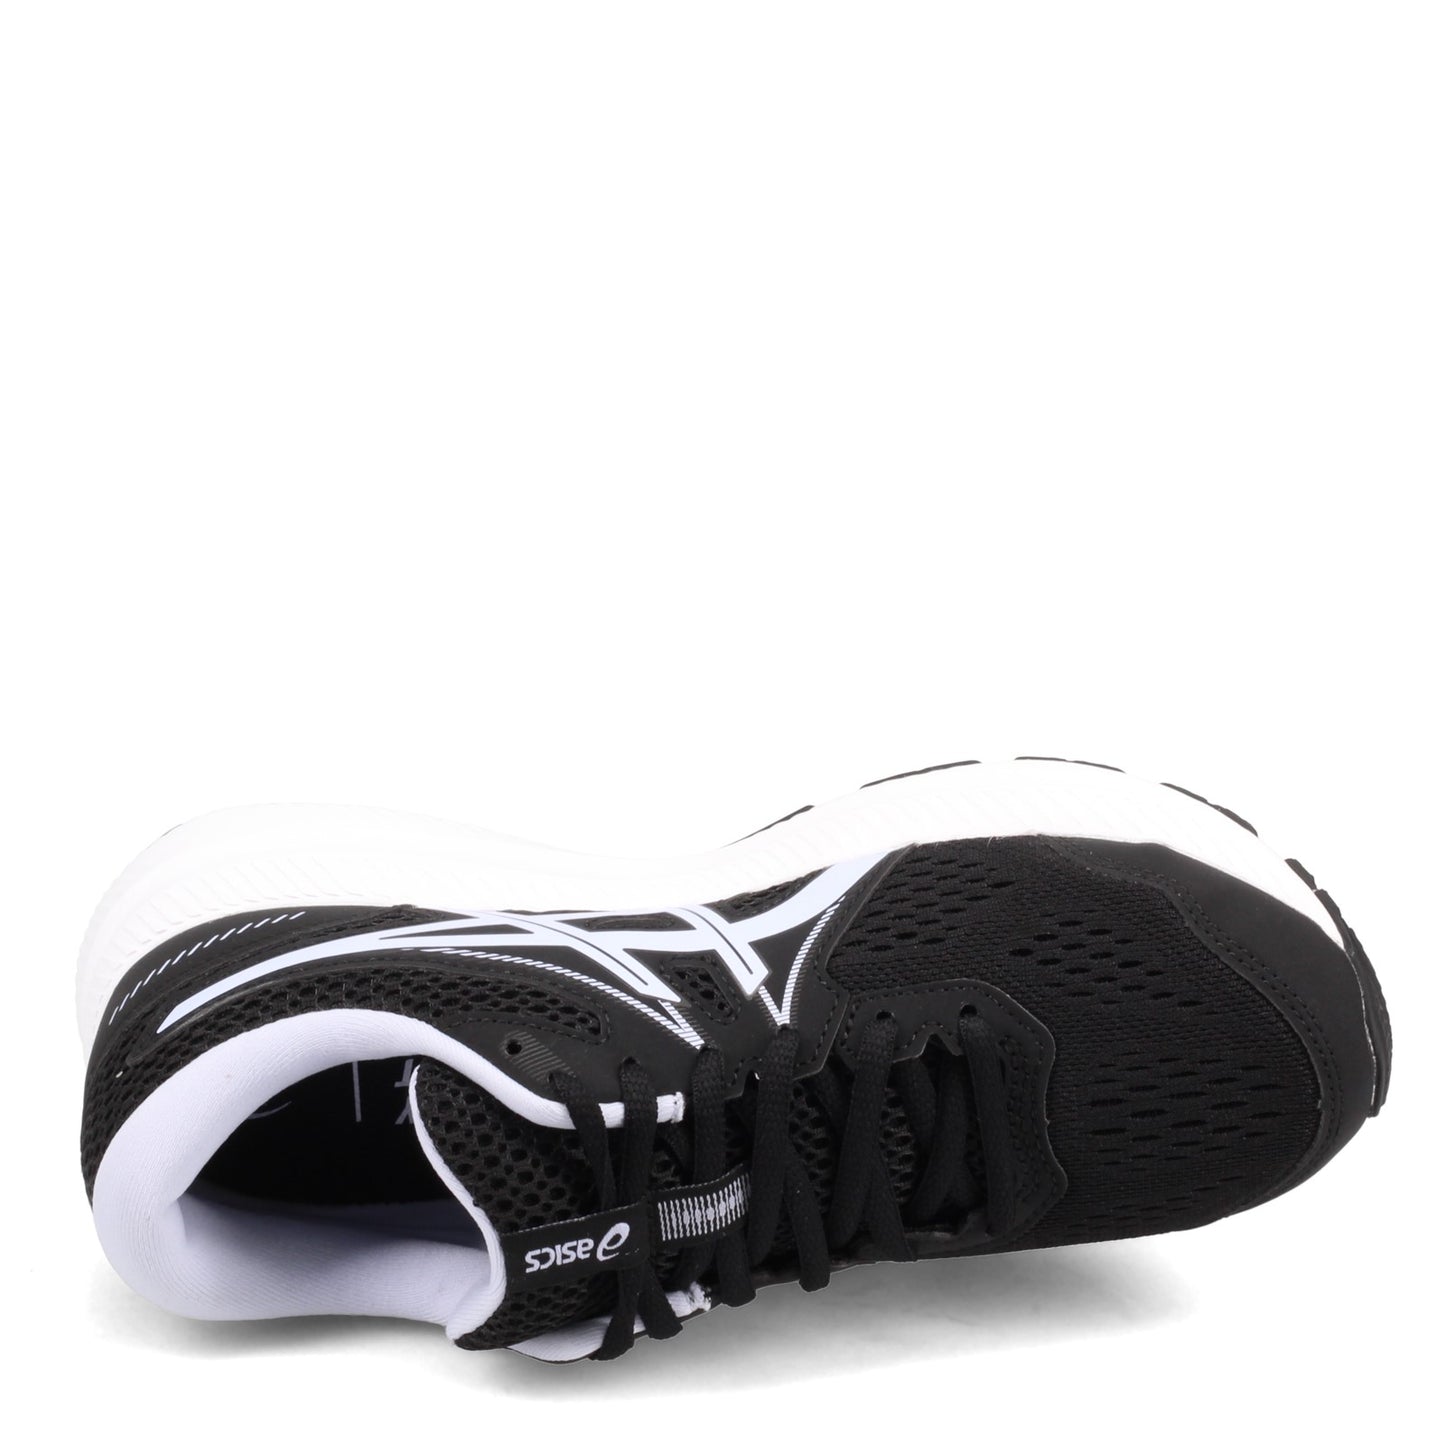 Peltz Shoes  Women's ASICS GEL-Contend 7 Running Shoe BLACK / OPAL 1012A911-005